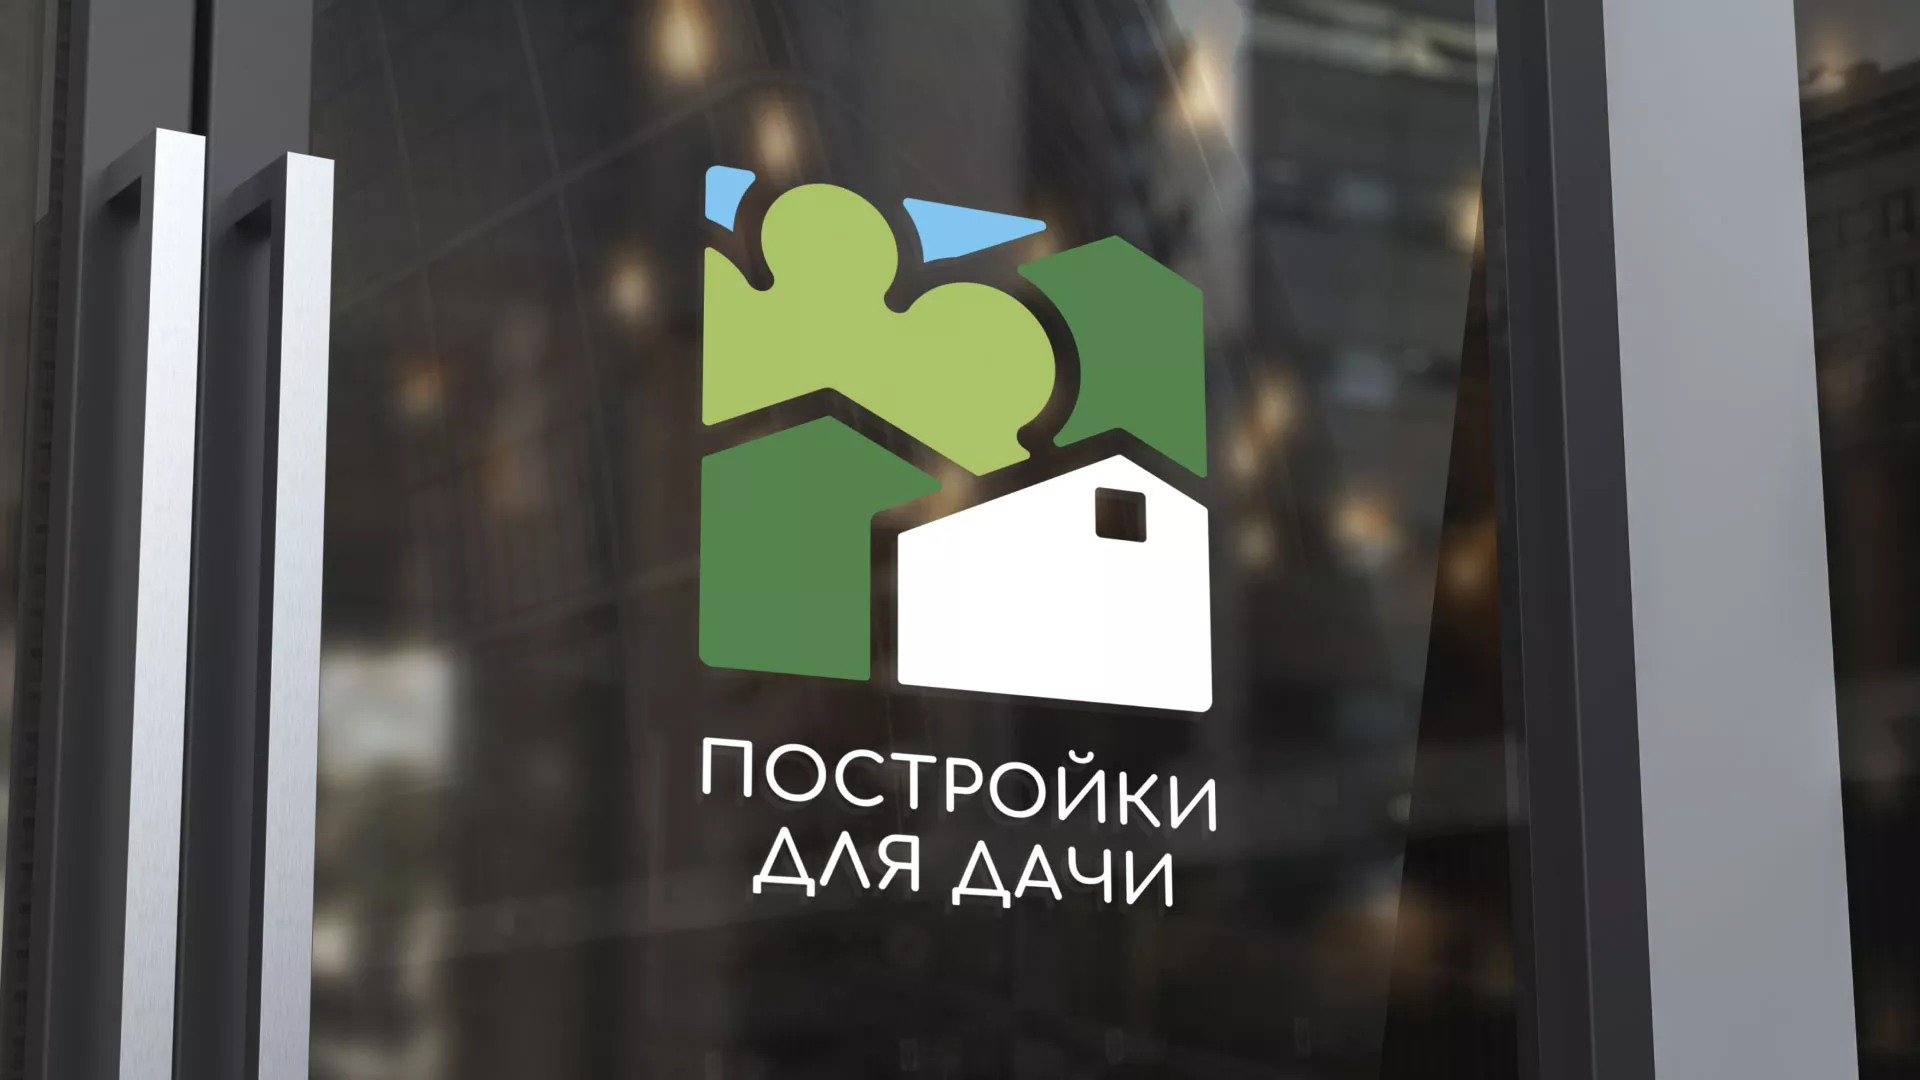 Разработка логотипа в Железногорске-Илимском для компании «Постройки для дачи»